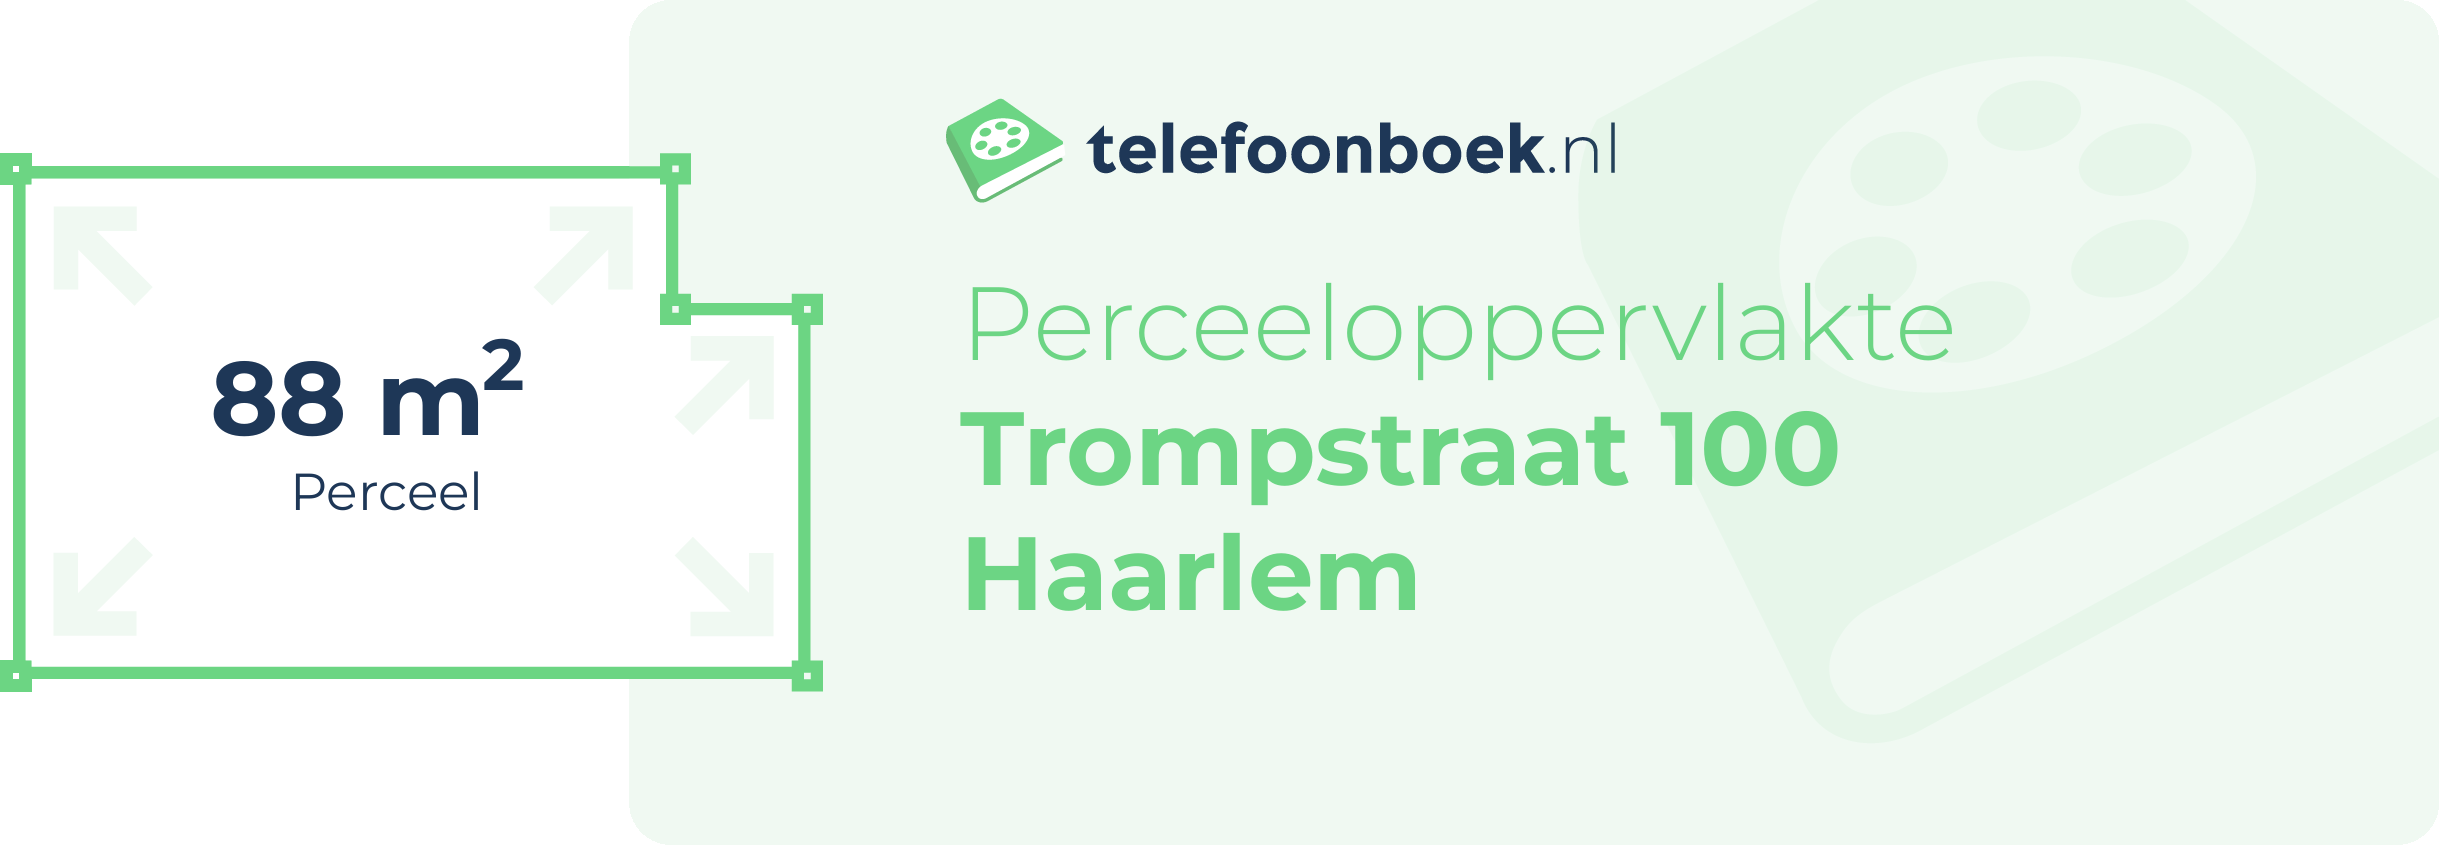 Perceeloppervlakte Trompstraat 100 Haarlem